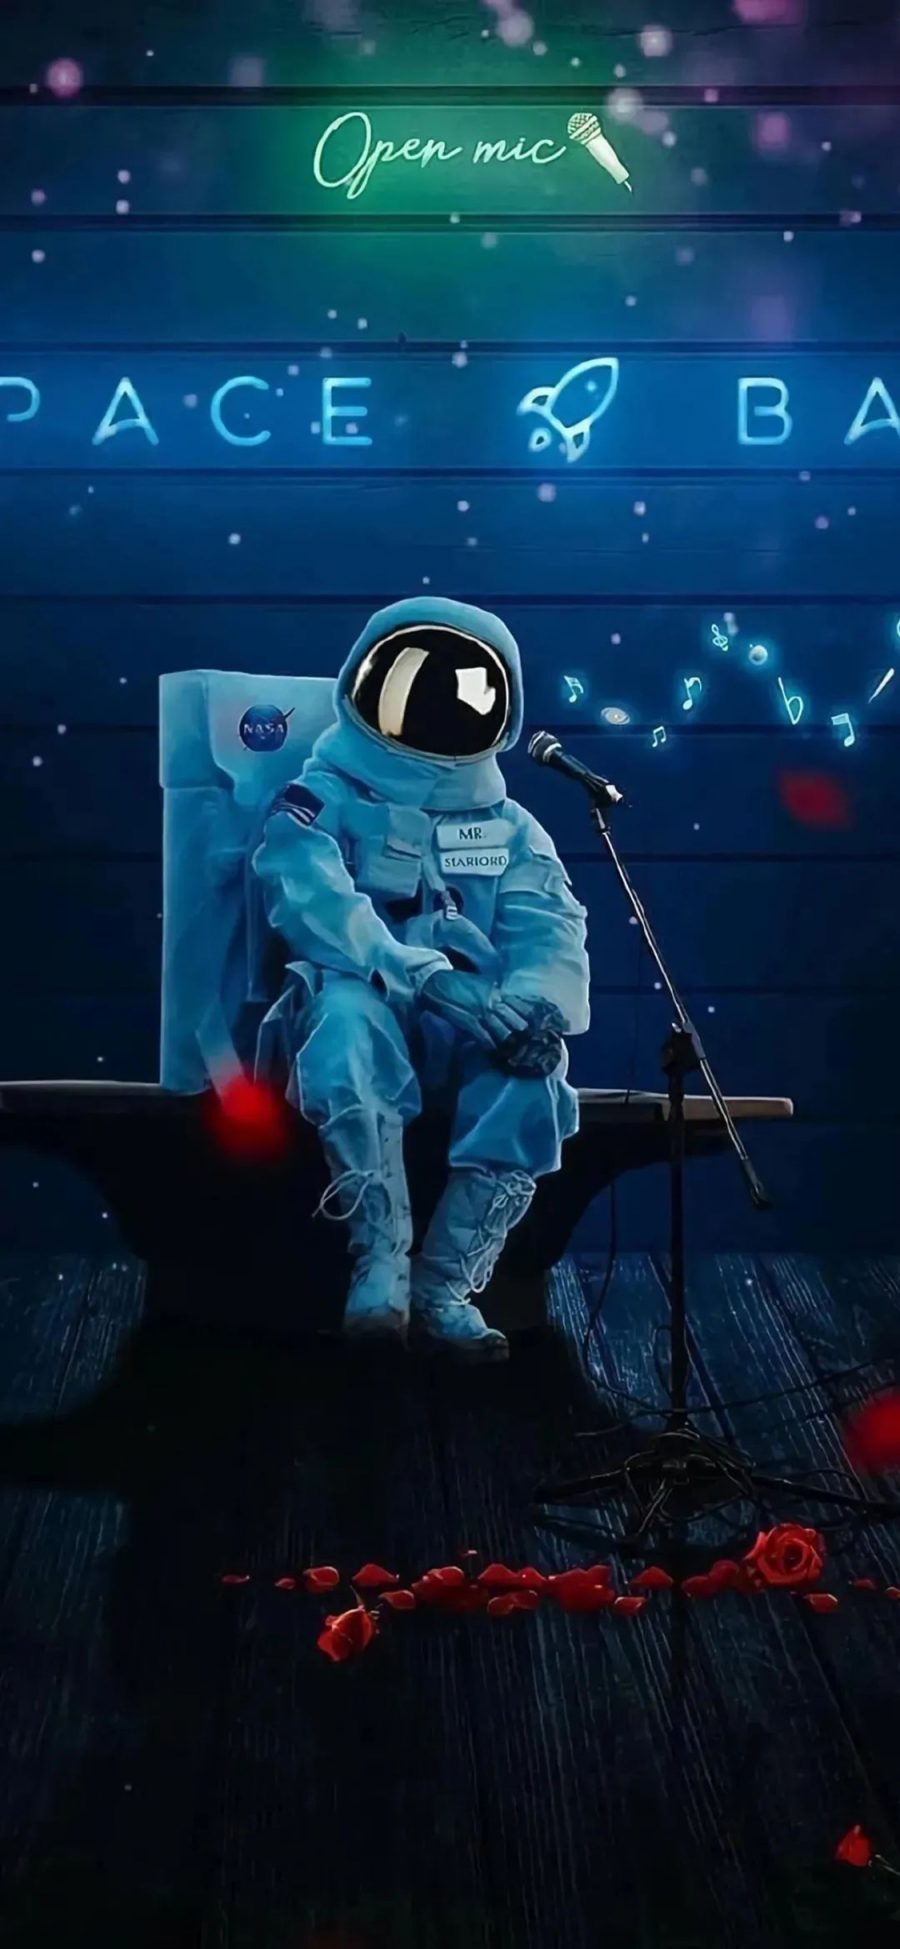 [2436×1125]插图 宇航员 孤独 苹果手机动漫壁纸图片